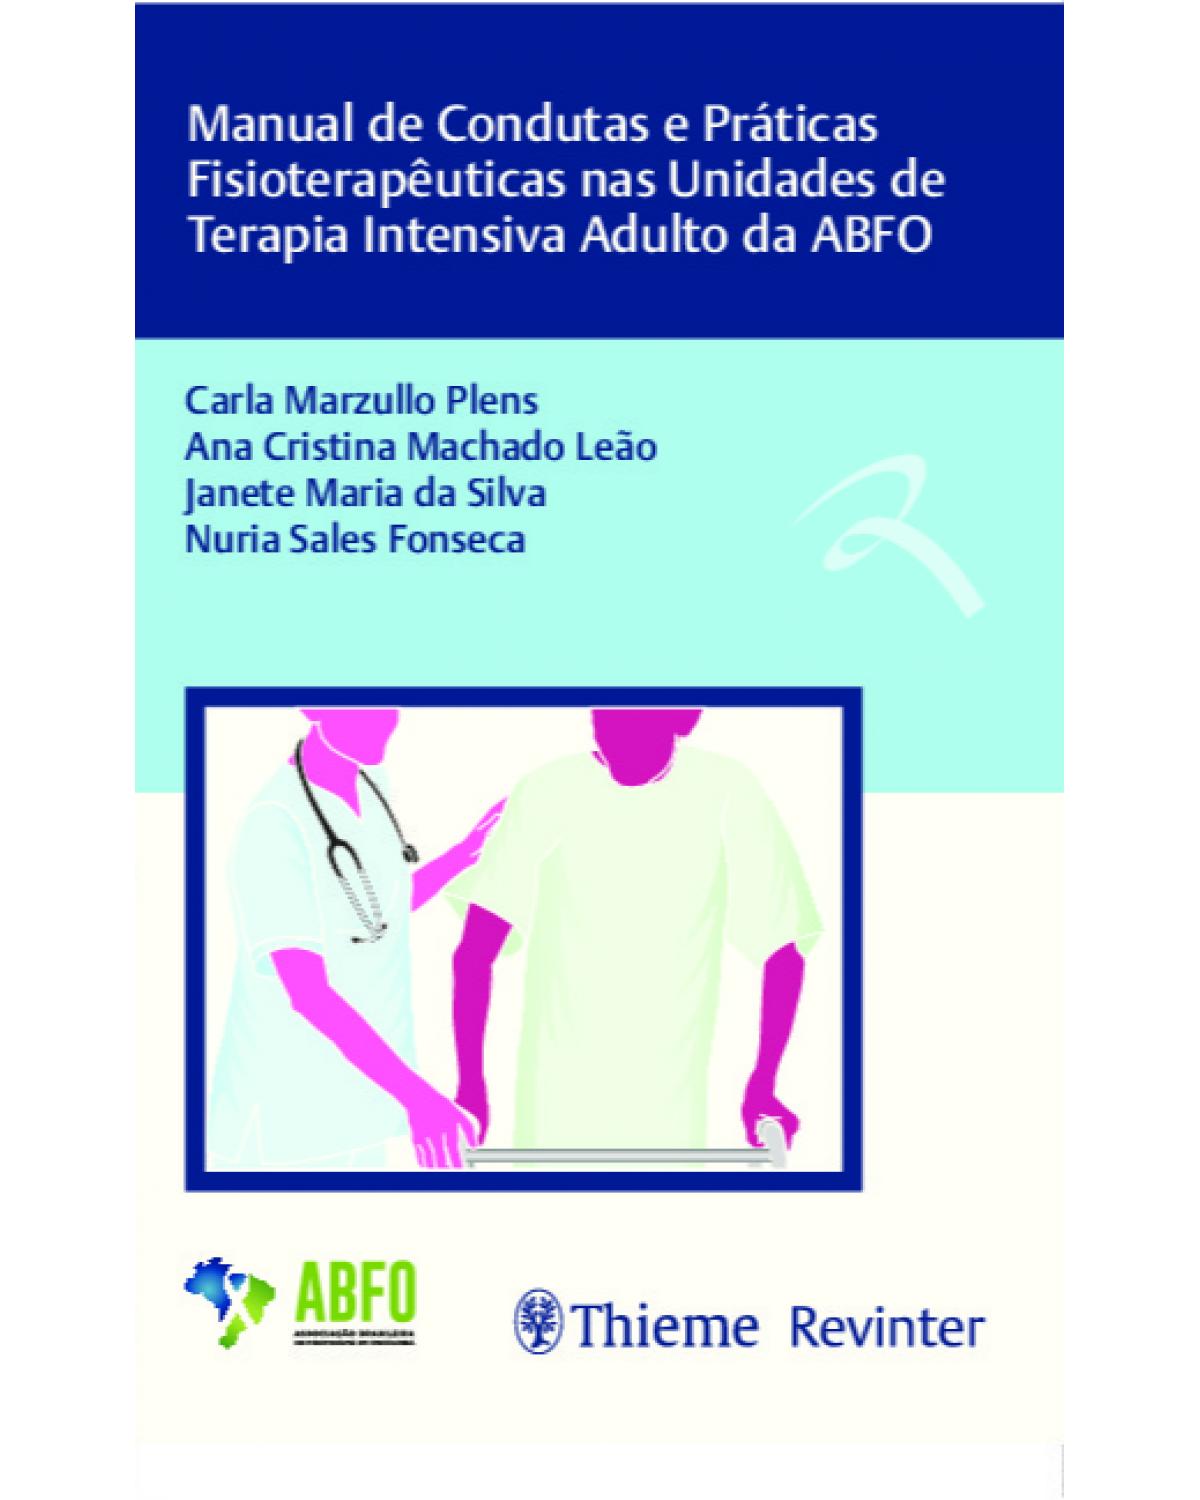 Manual de condutas e práticas fisioterapêuticas nas unidades de terapia intensiva adulto da ABFO - 1ª Edição | 2019